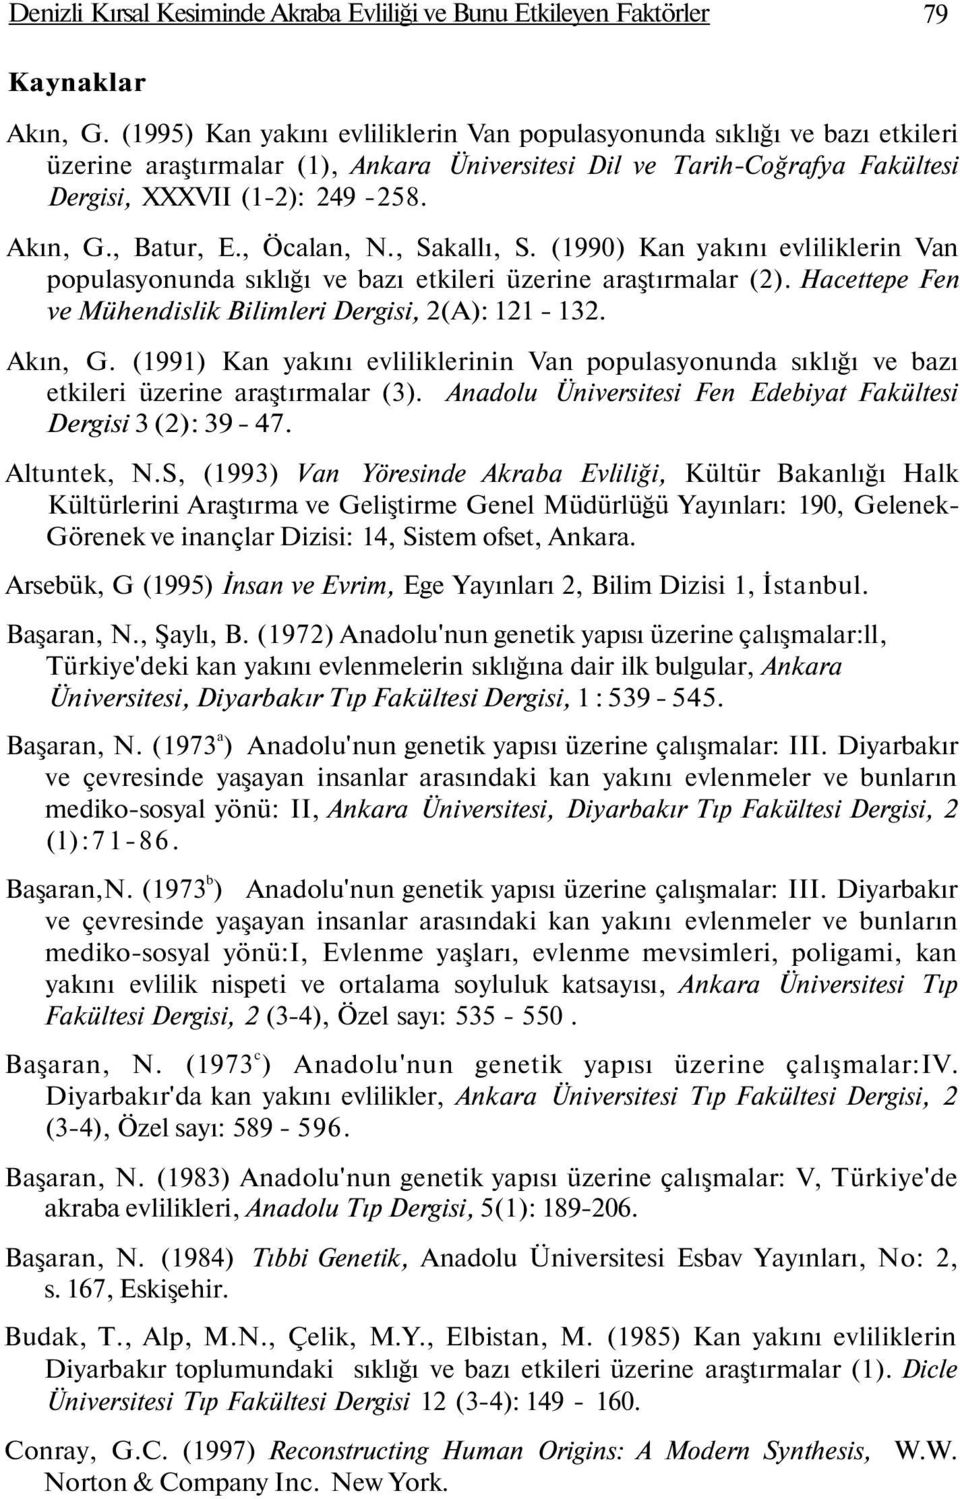 , Batur, E., Öcalan, N., Sakallı, S. (1990) Kan yakını evliliklerin Van populasyonunda sıklığı ve bazı etkileri üzerine araştırmalar (2). Hacettepe Fen ve Mühendislik Bilimleri Dergisi, 2(A): 121-132.